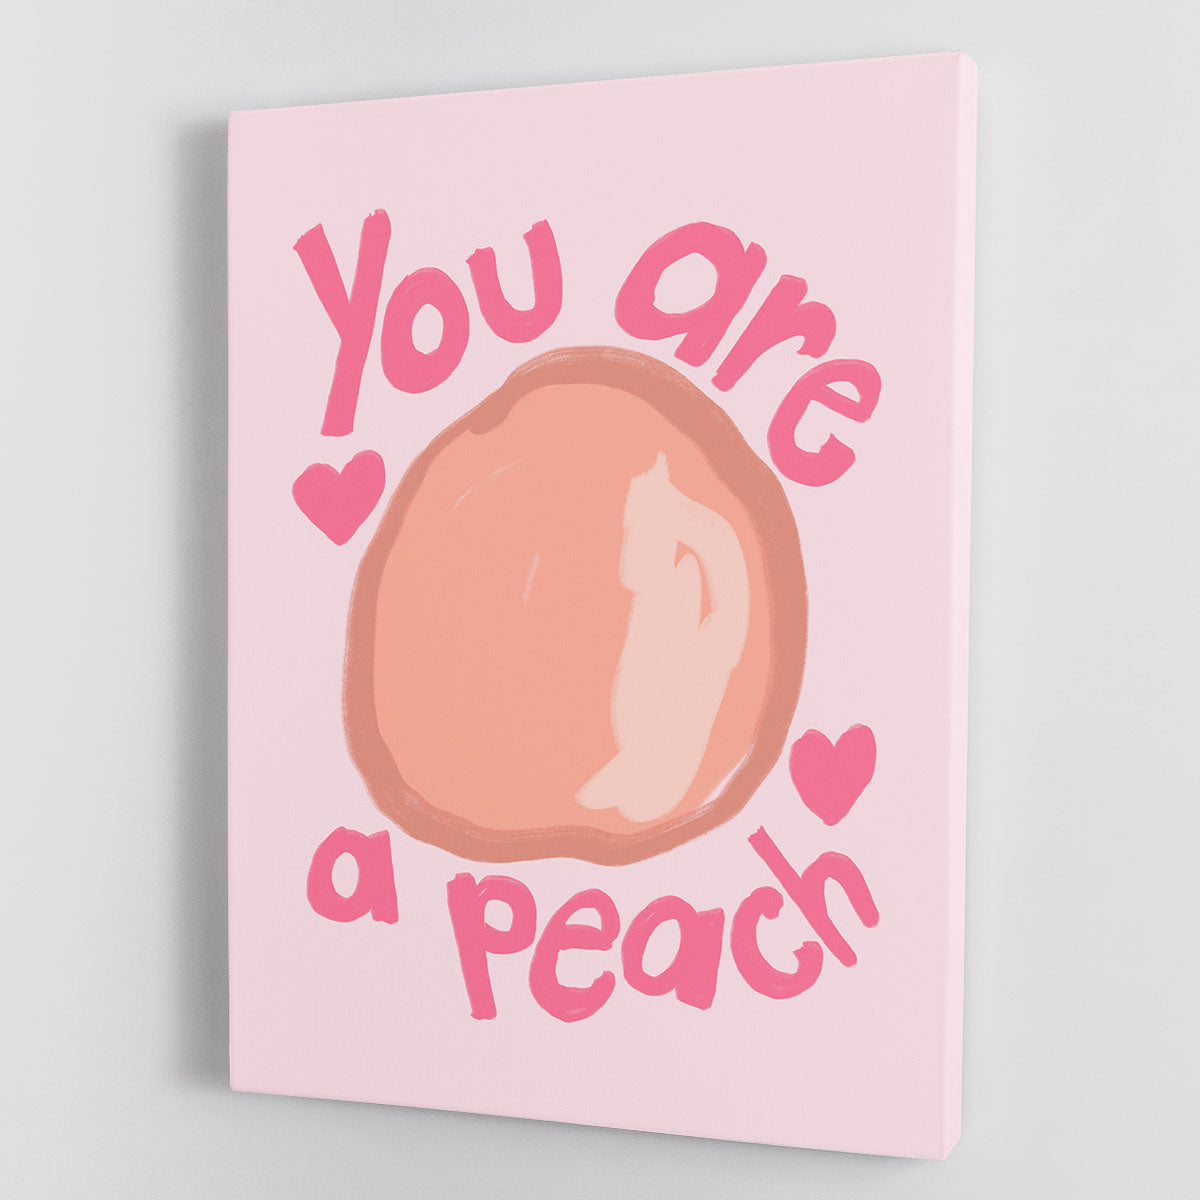 Peach Canvas Print or Poster - Canvas Art Rocks - 1